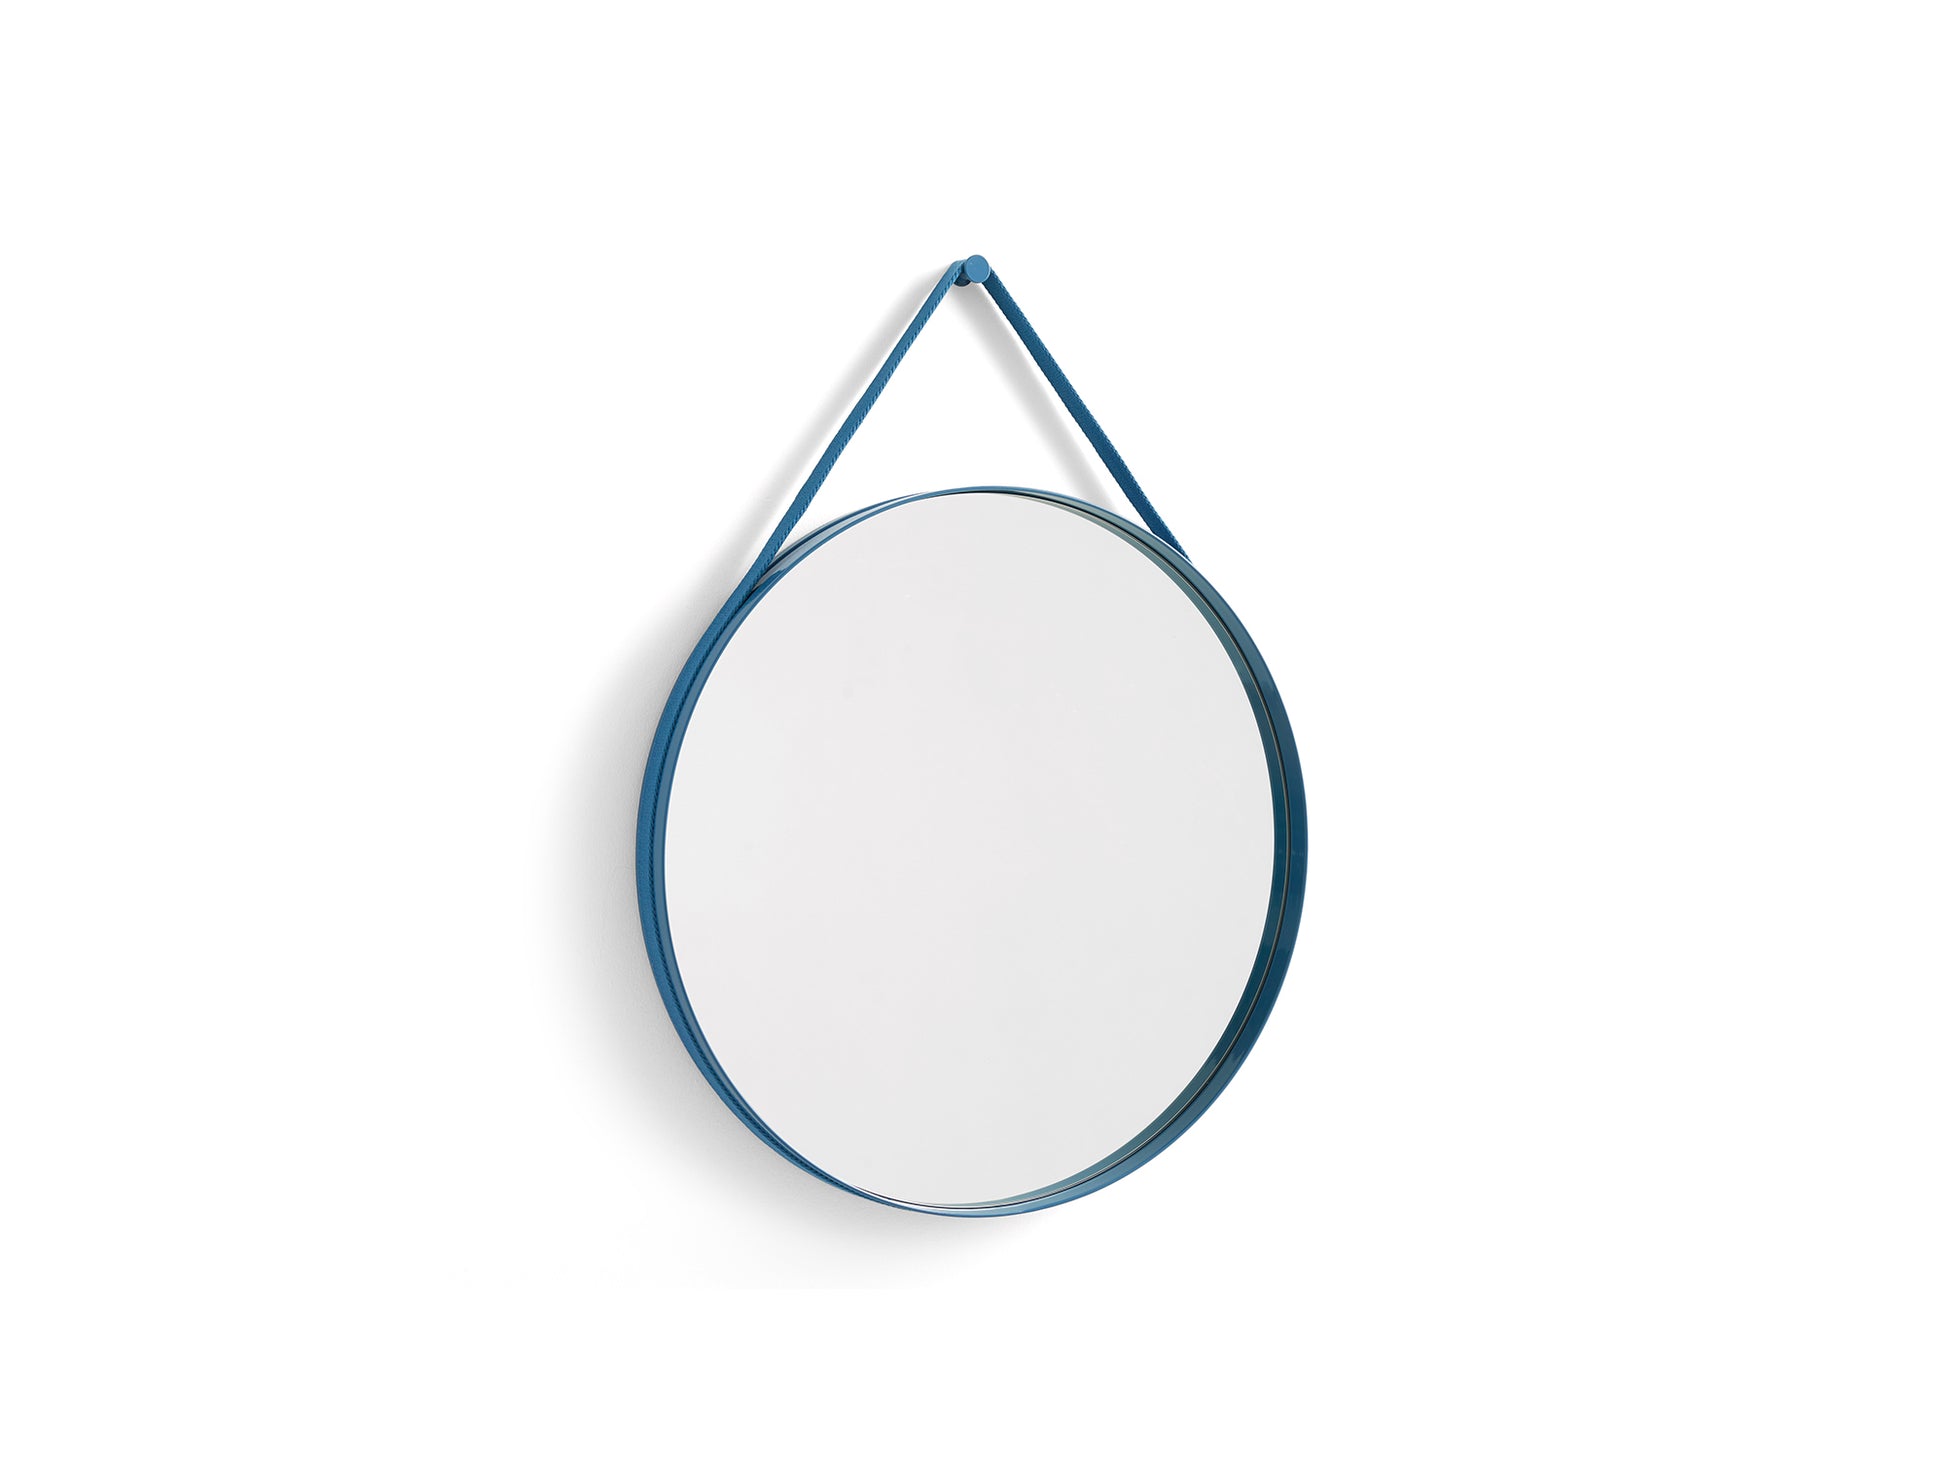 Strap Mirror No 2 by HAY - D 70 cm / Blue